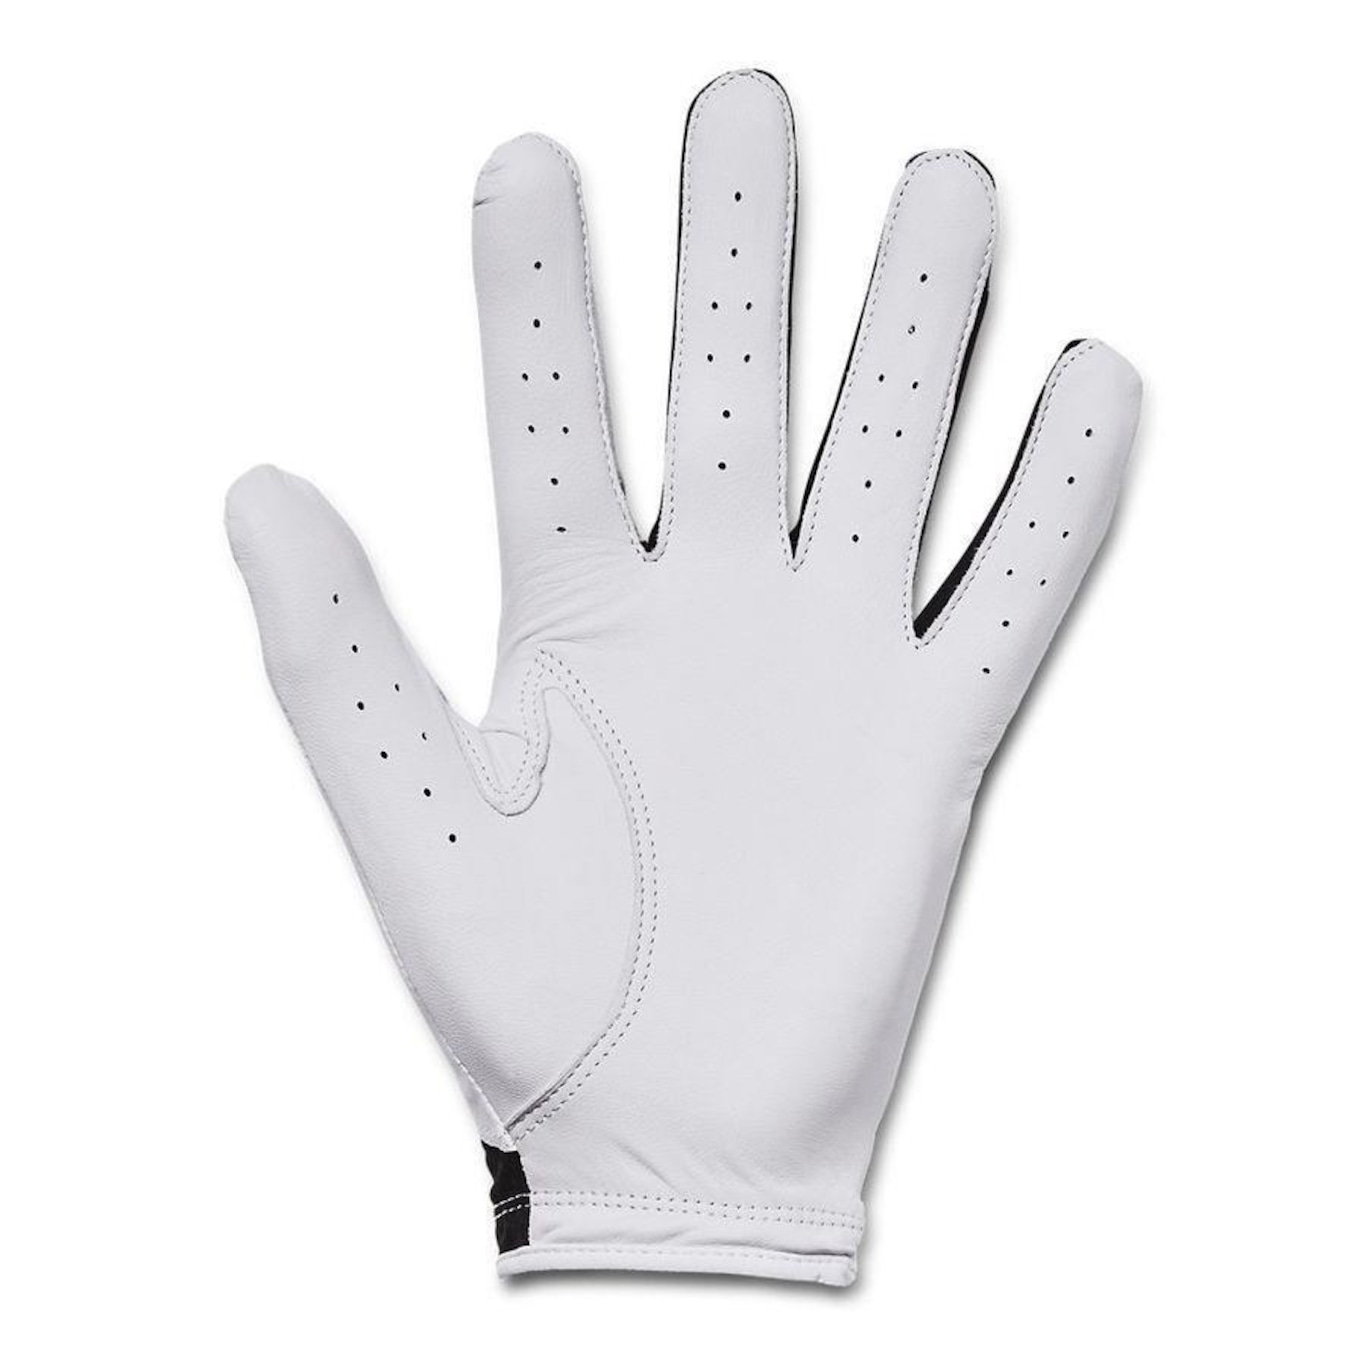 under armor golf gloves, Off 67%